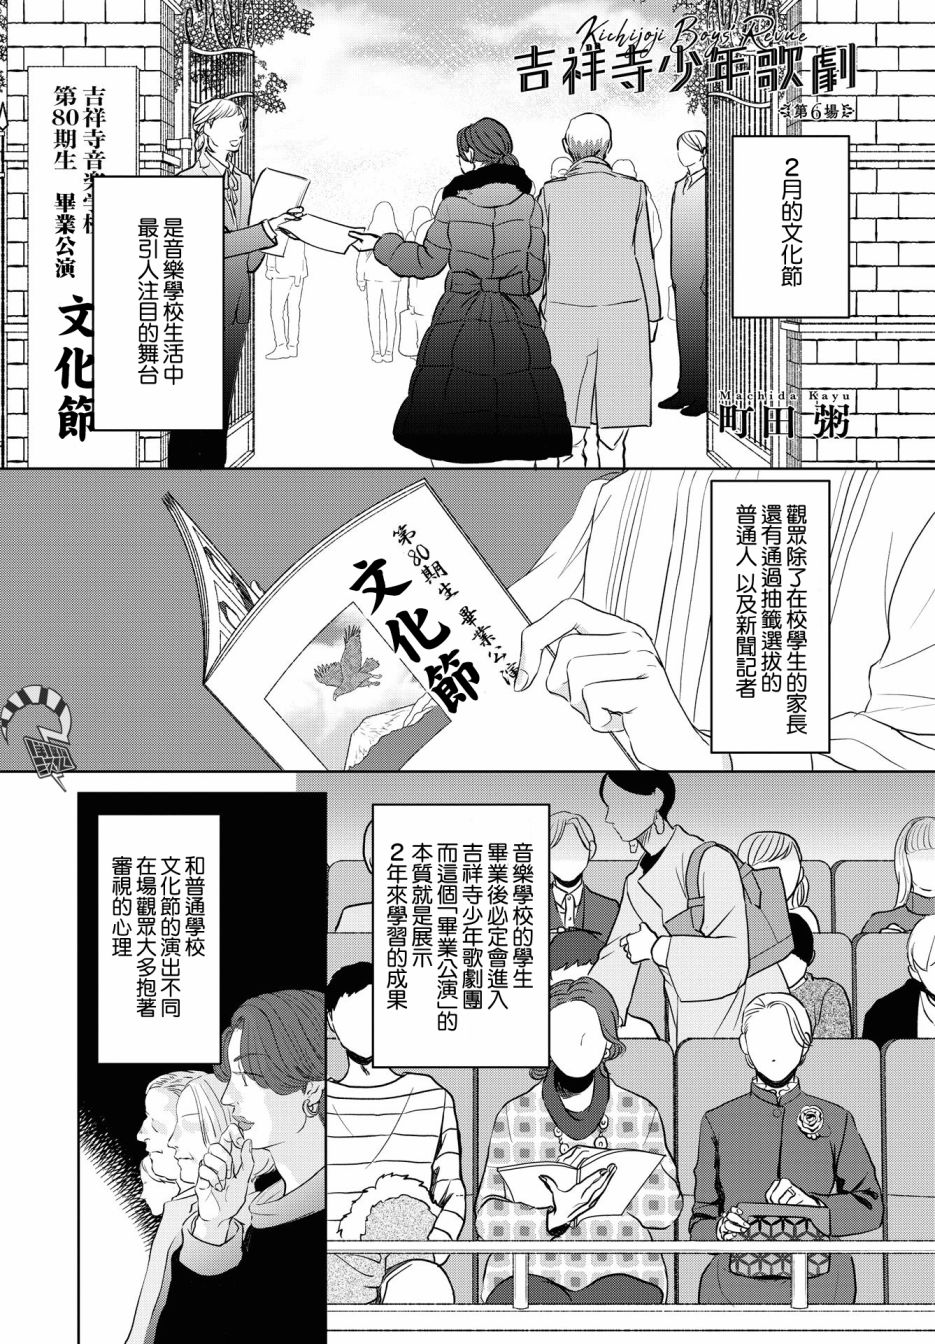 吉祥寺少年歌劇【第06話】 漫畫線上看- 動漫戲說(ACGN.cc)